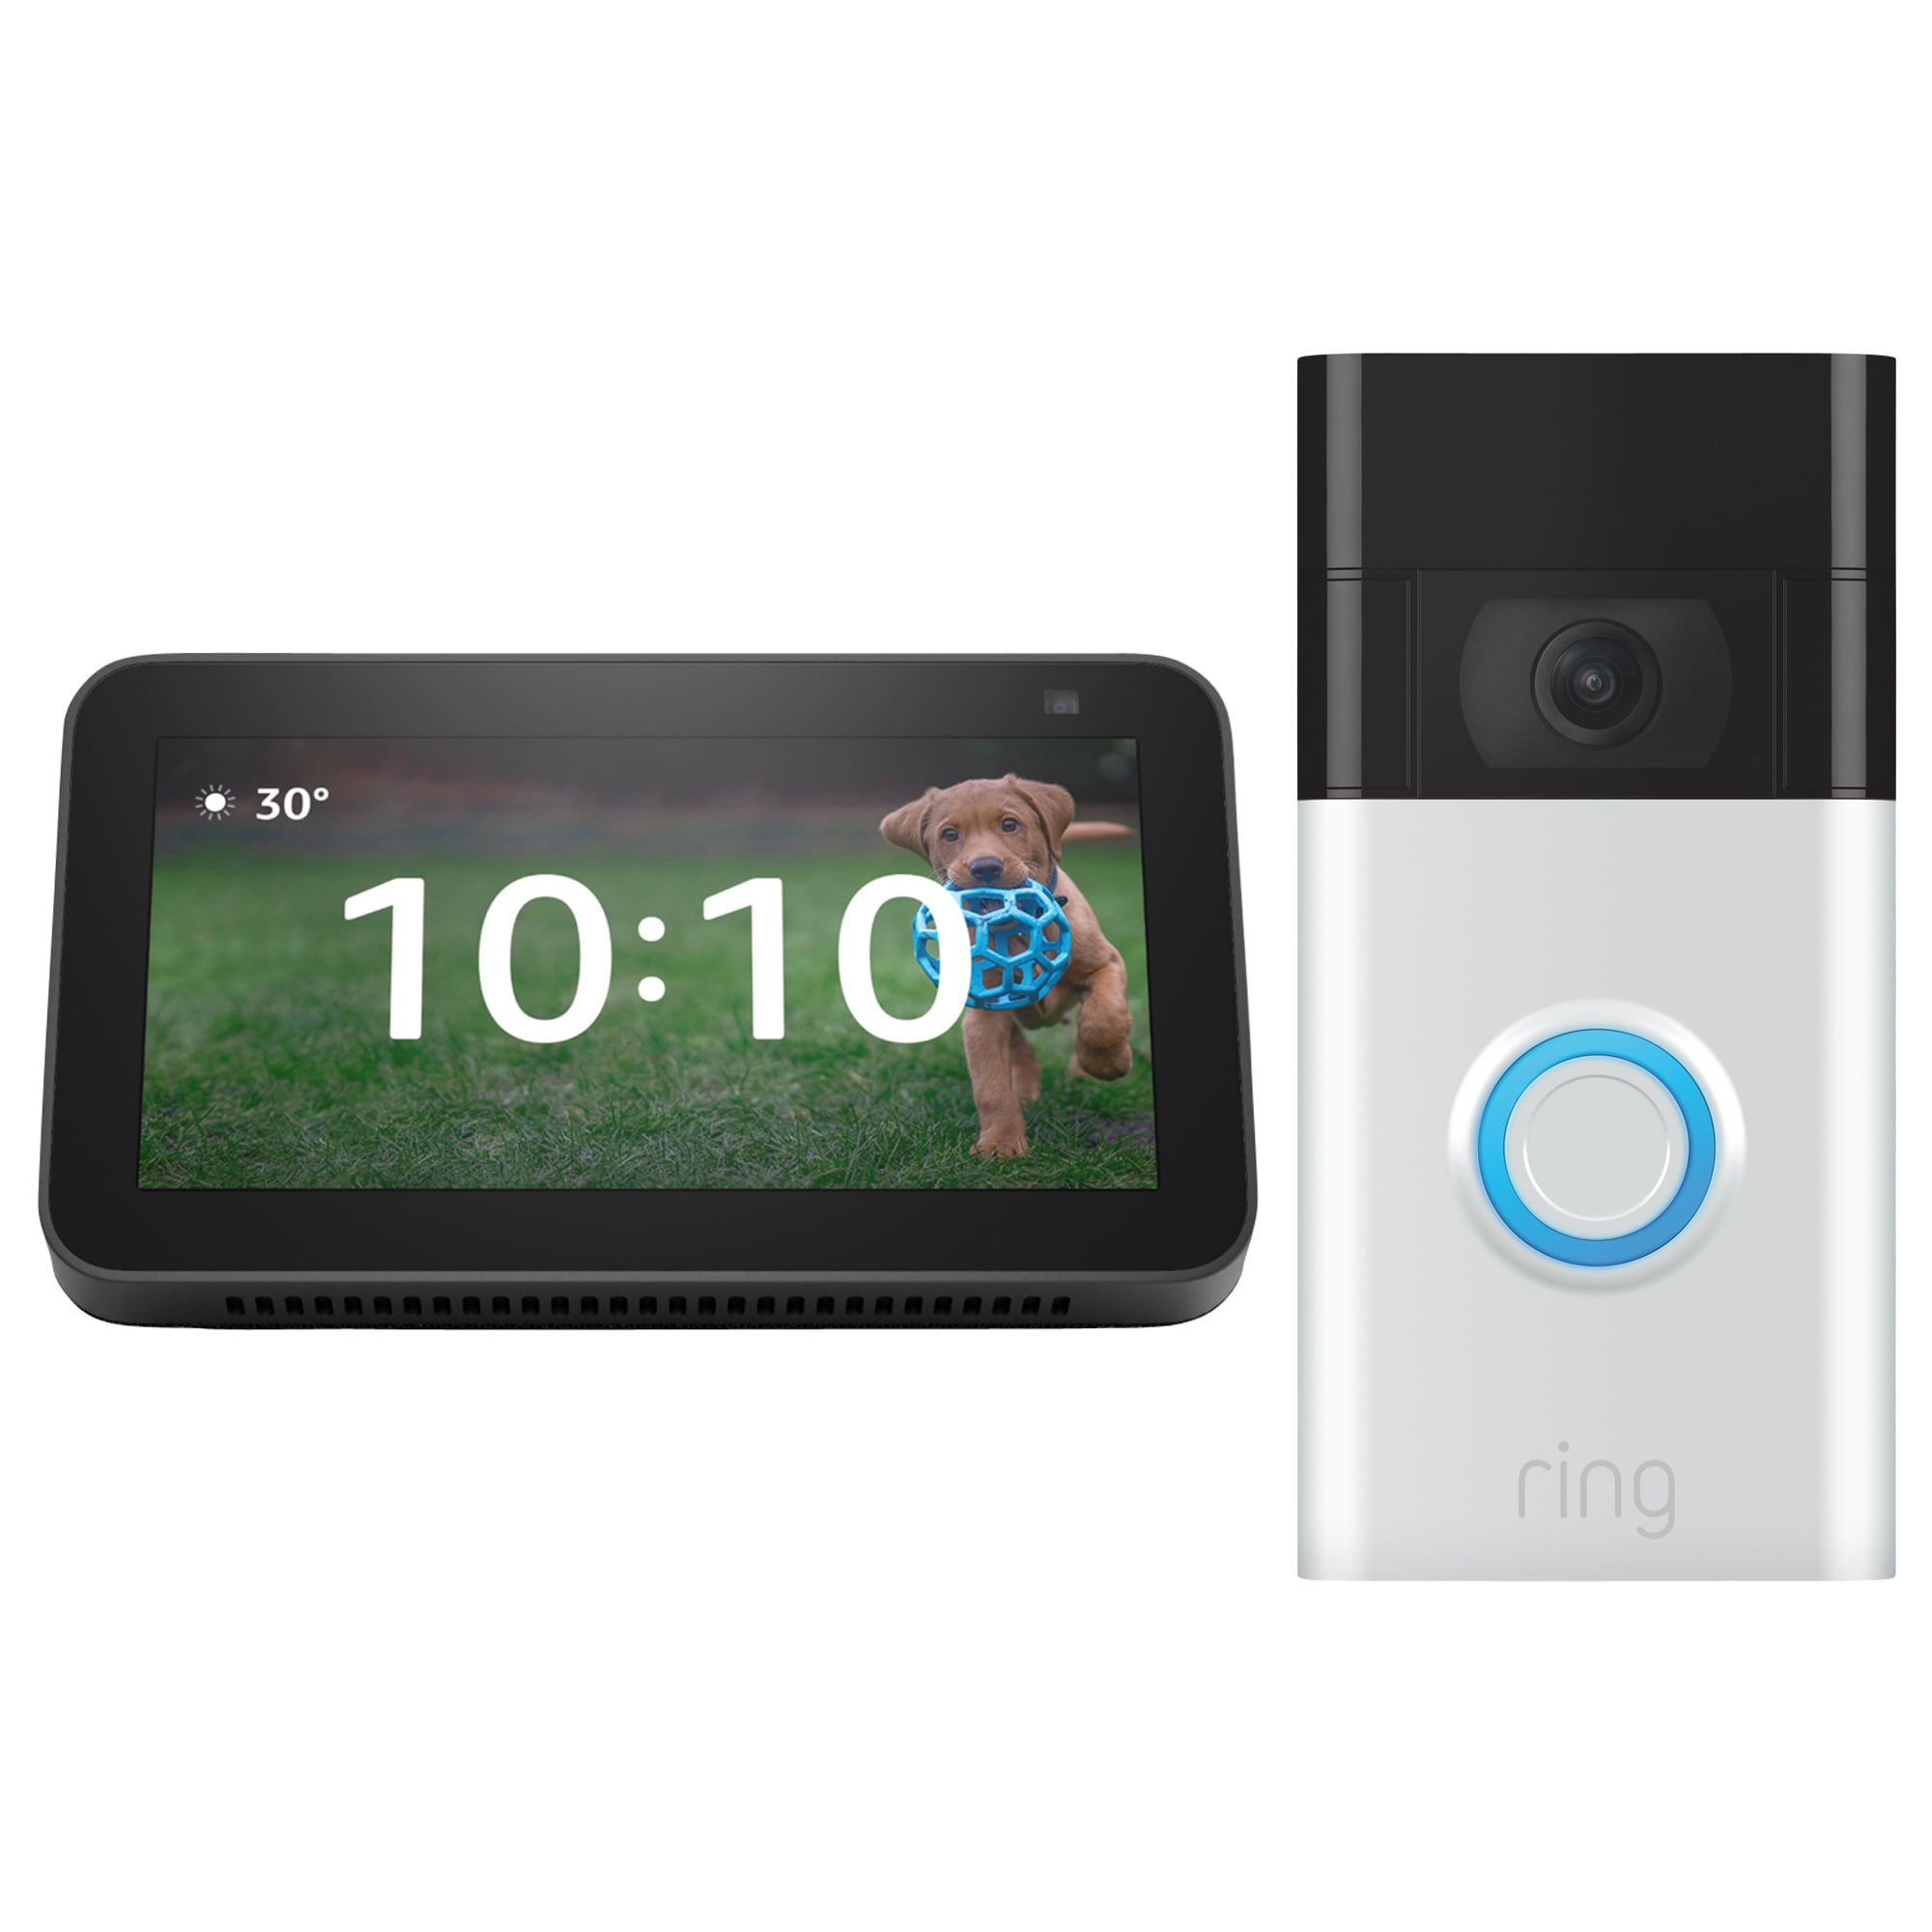 Shop Amazon Echo Show 5 (2nd Gen) - Black + Ring Video Doorbell